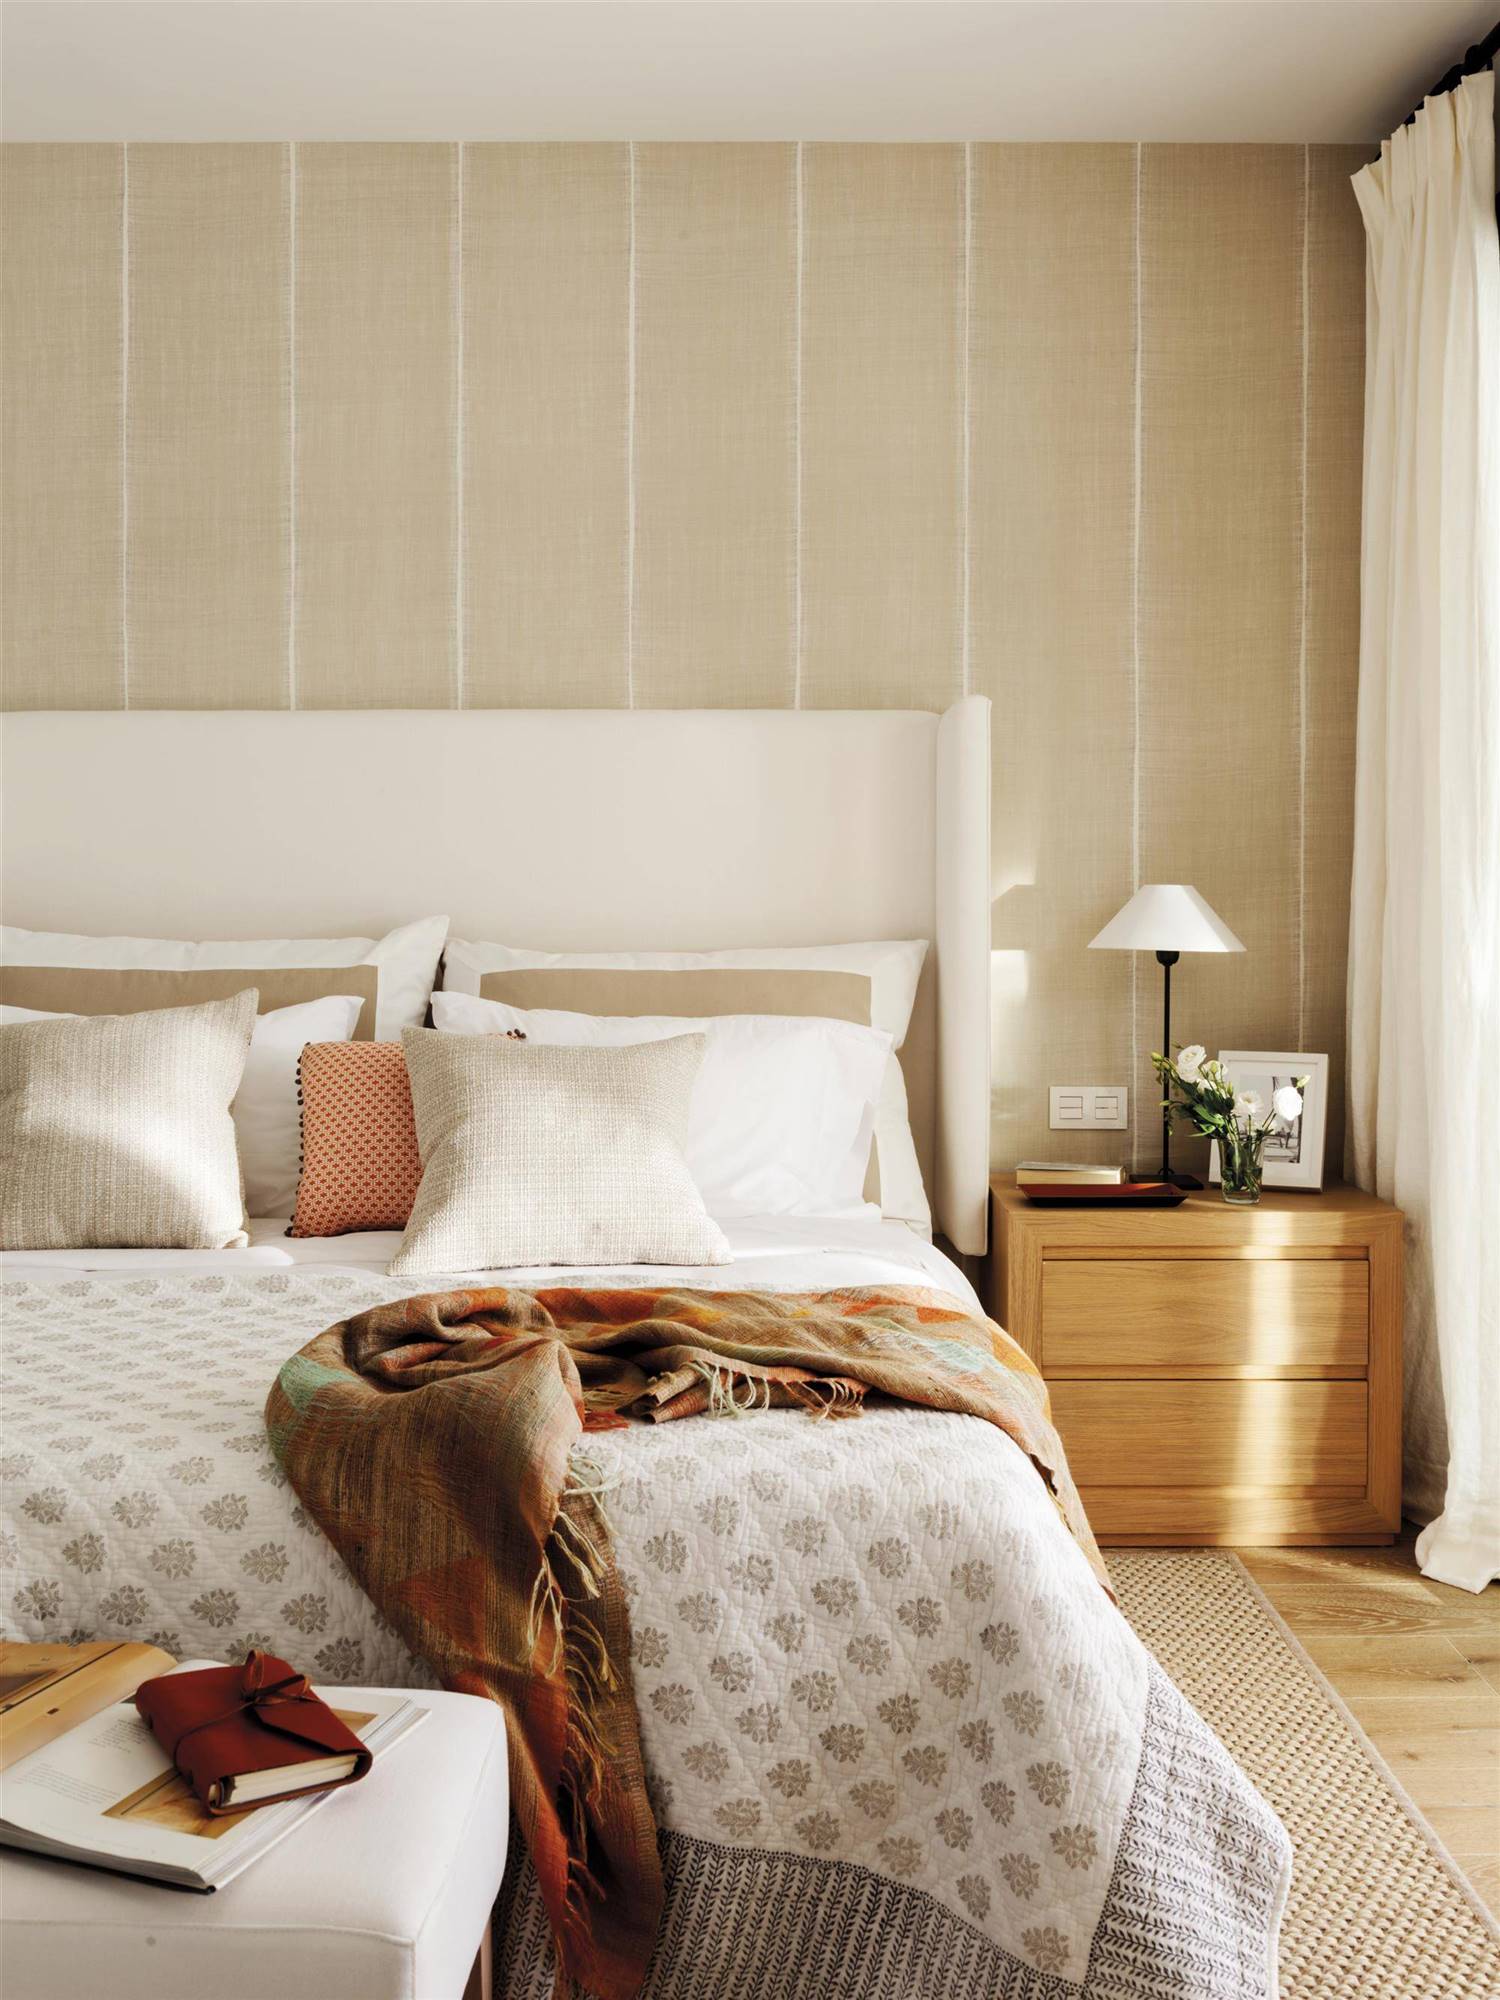 Dormitorio con cabecero orejero beige, mesita de noche de madera y papel pintado a rayas.